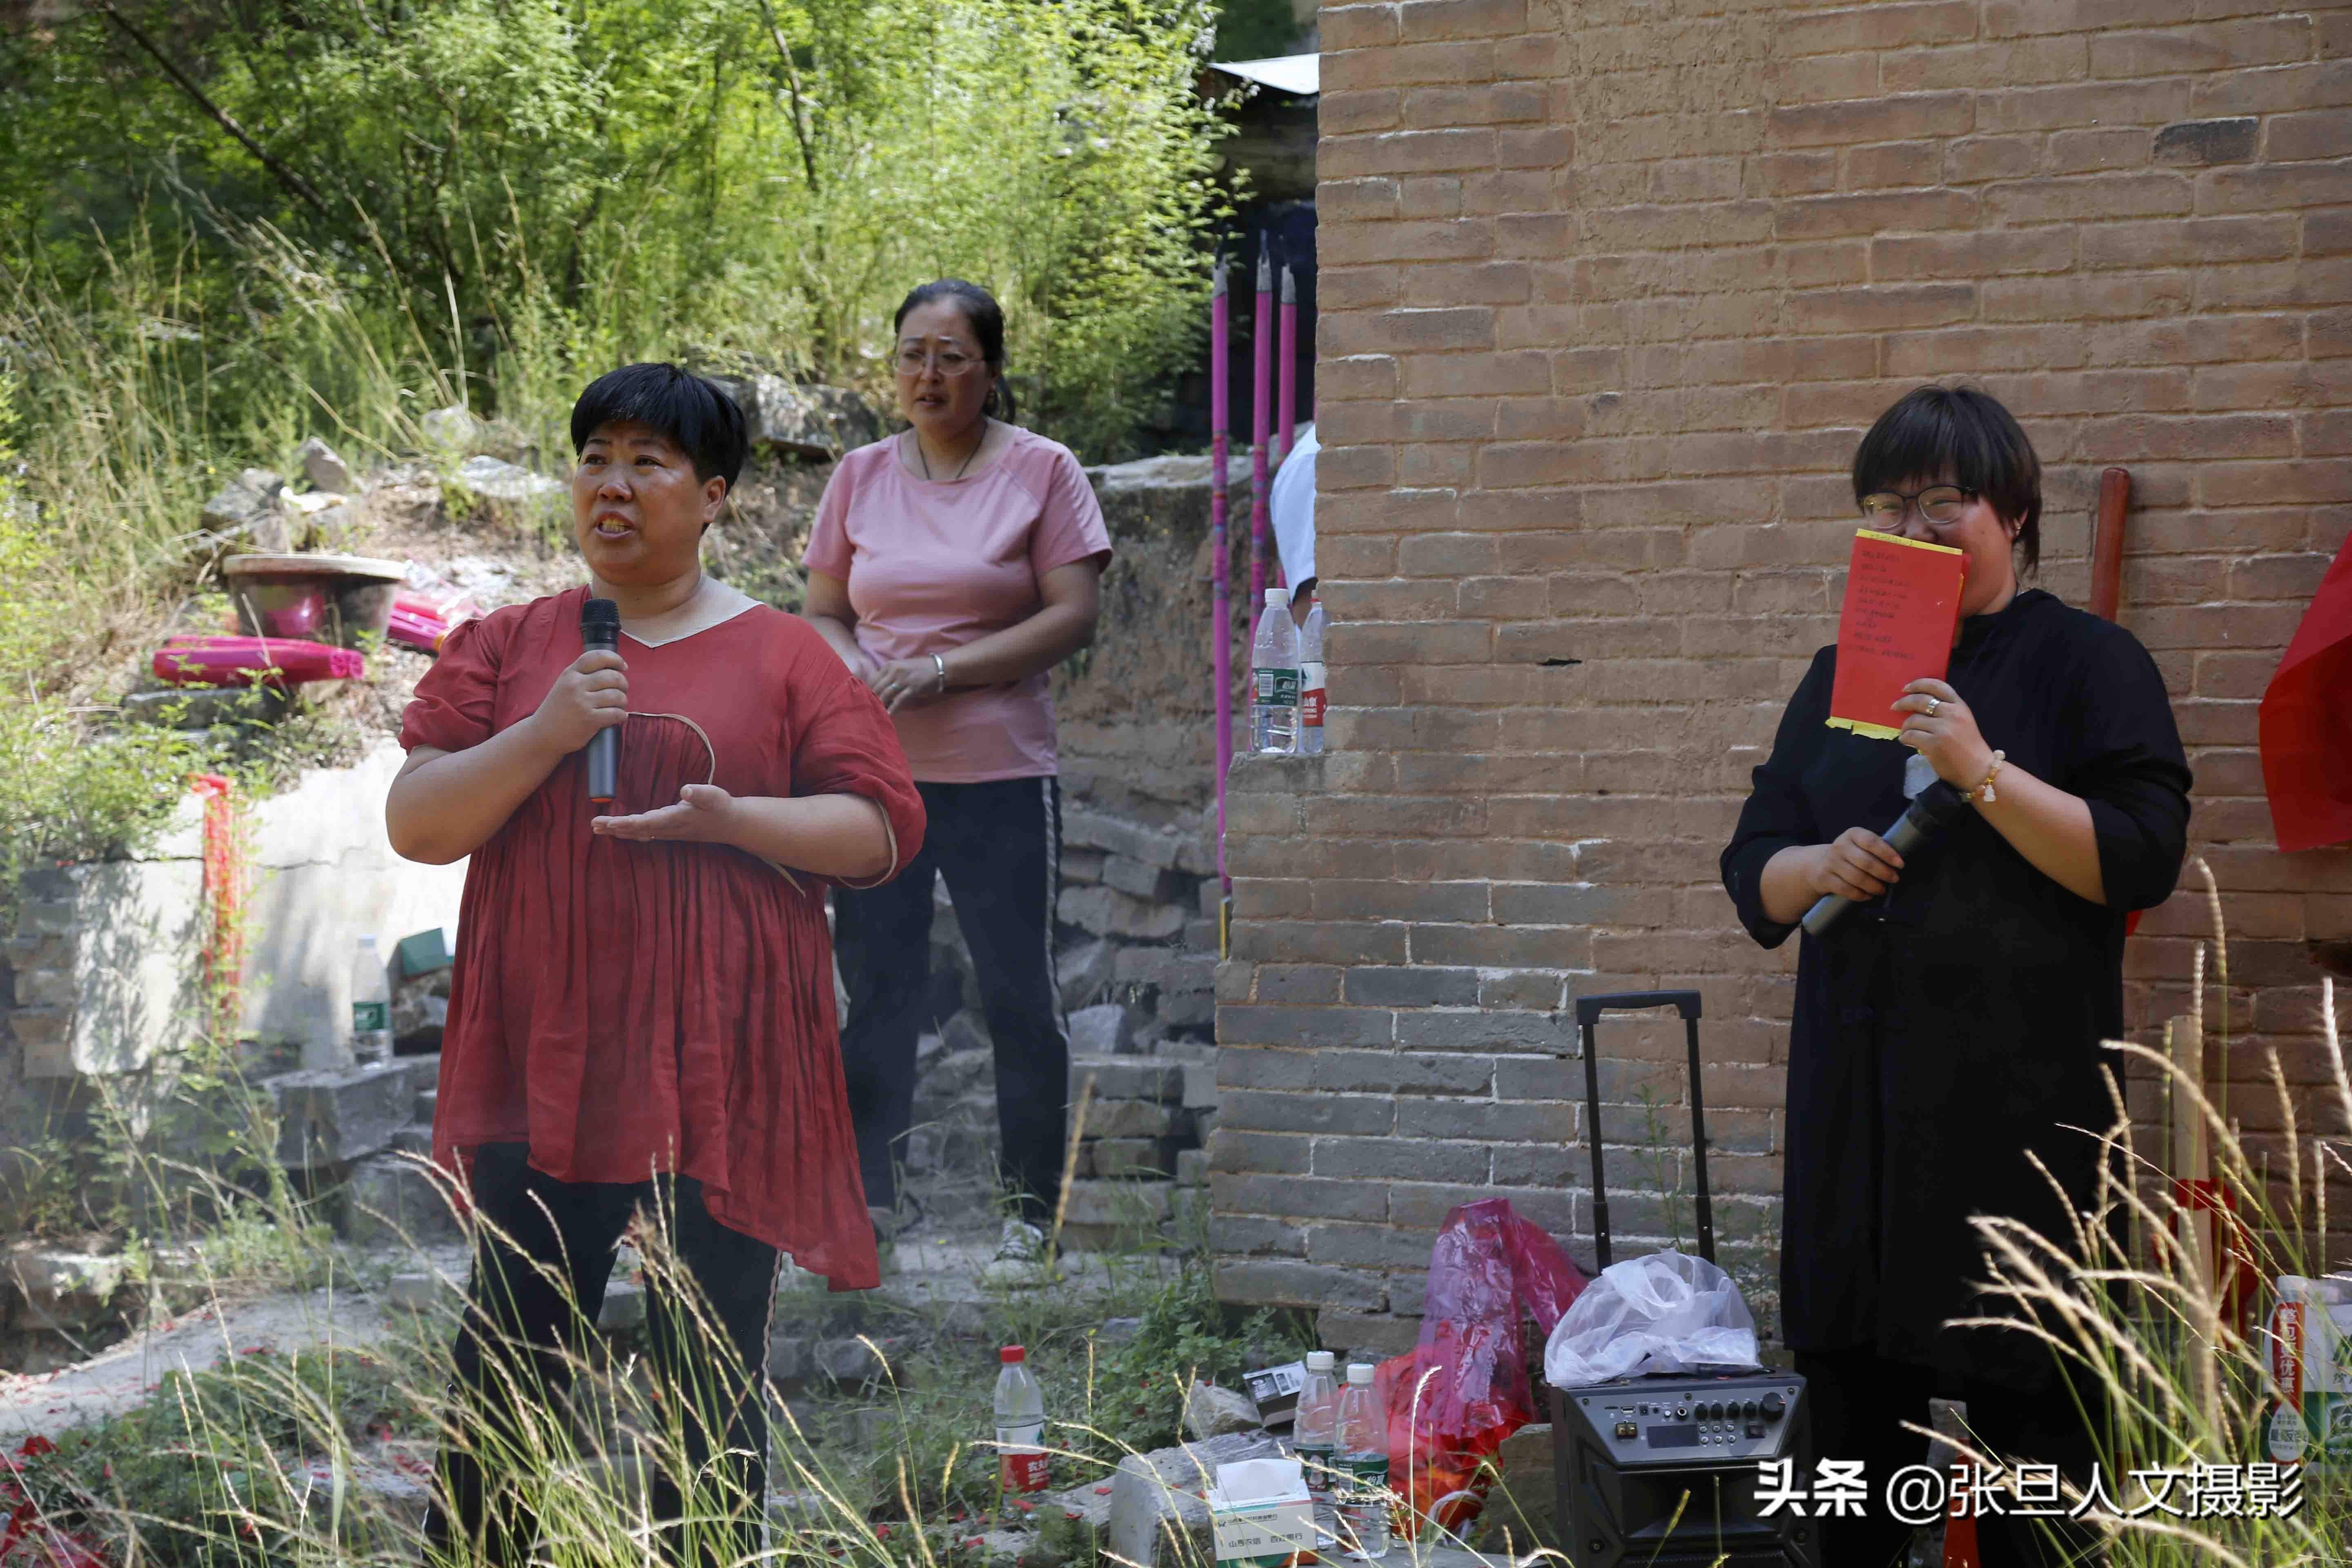 临汾西郭村历史上有两眼古泉被毁今日破土动工修复让其重现辉煌